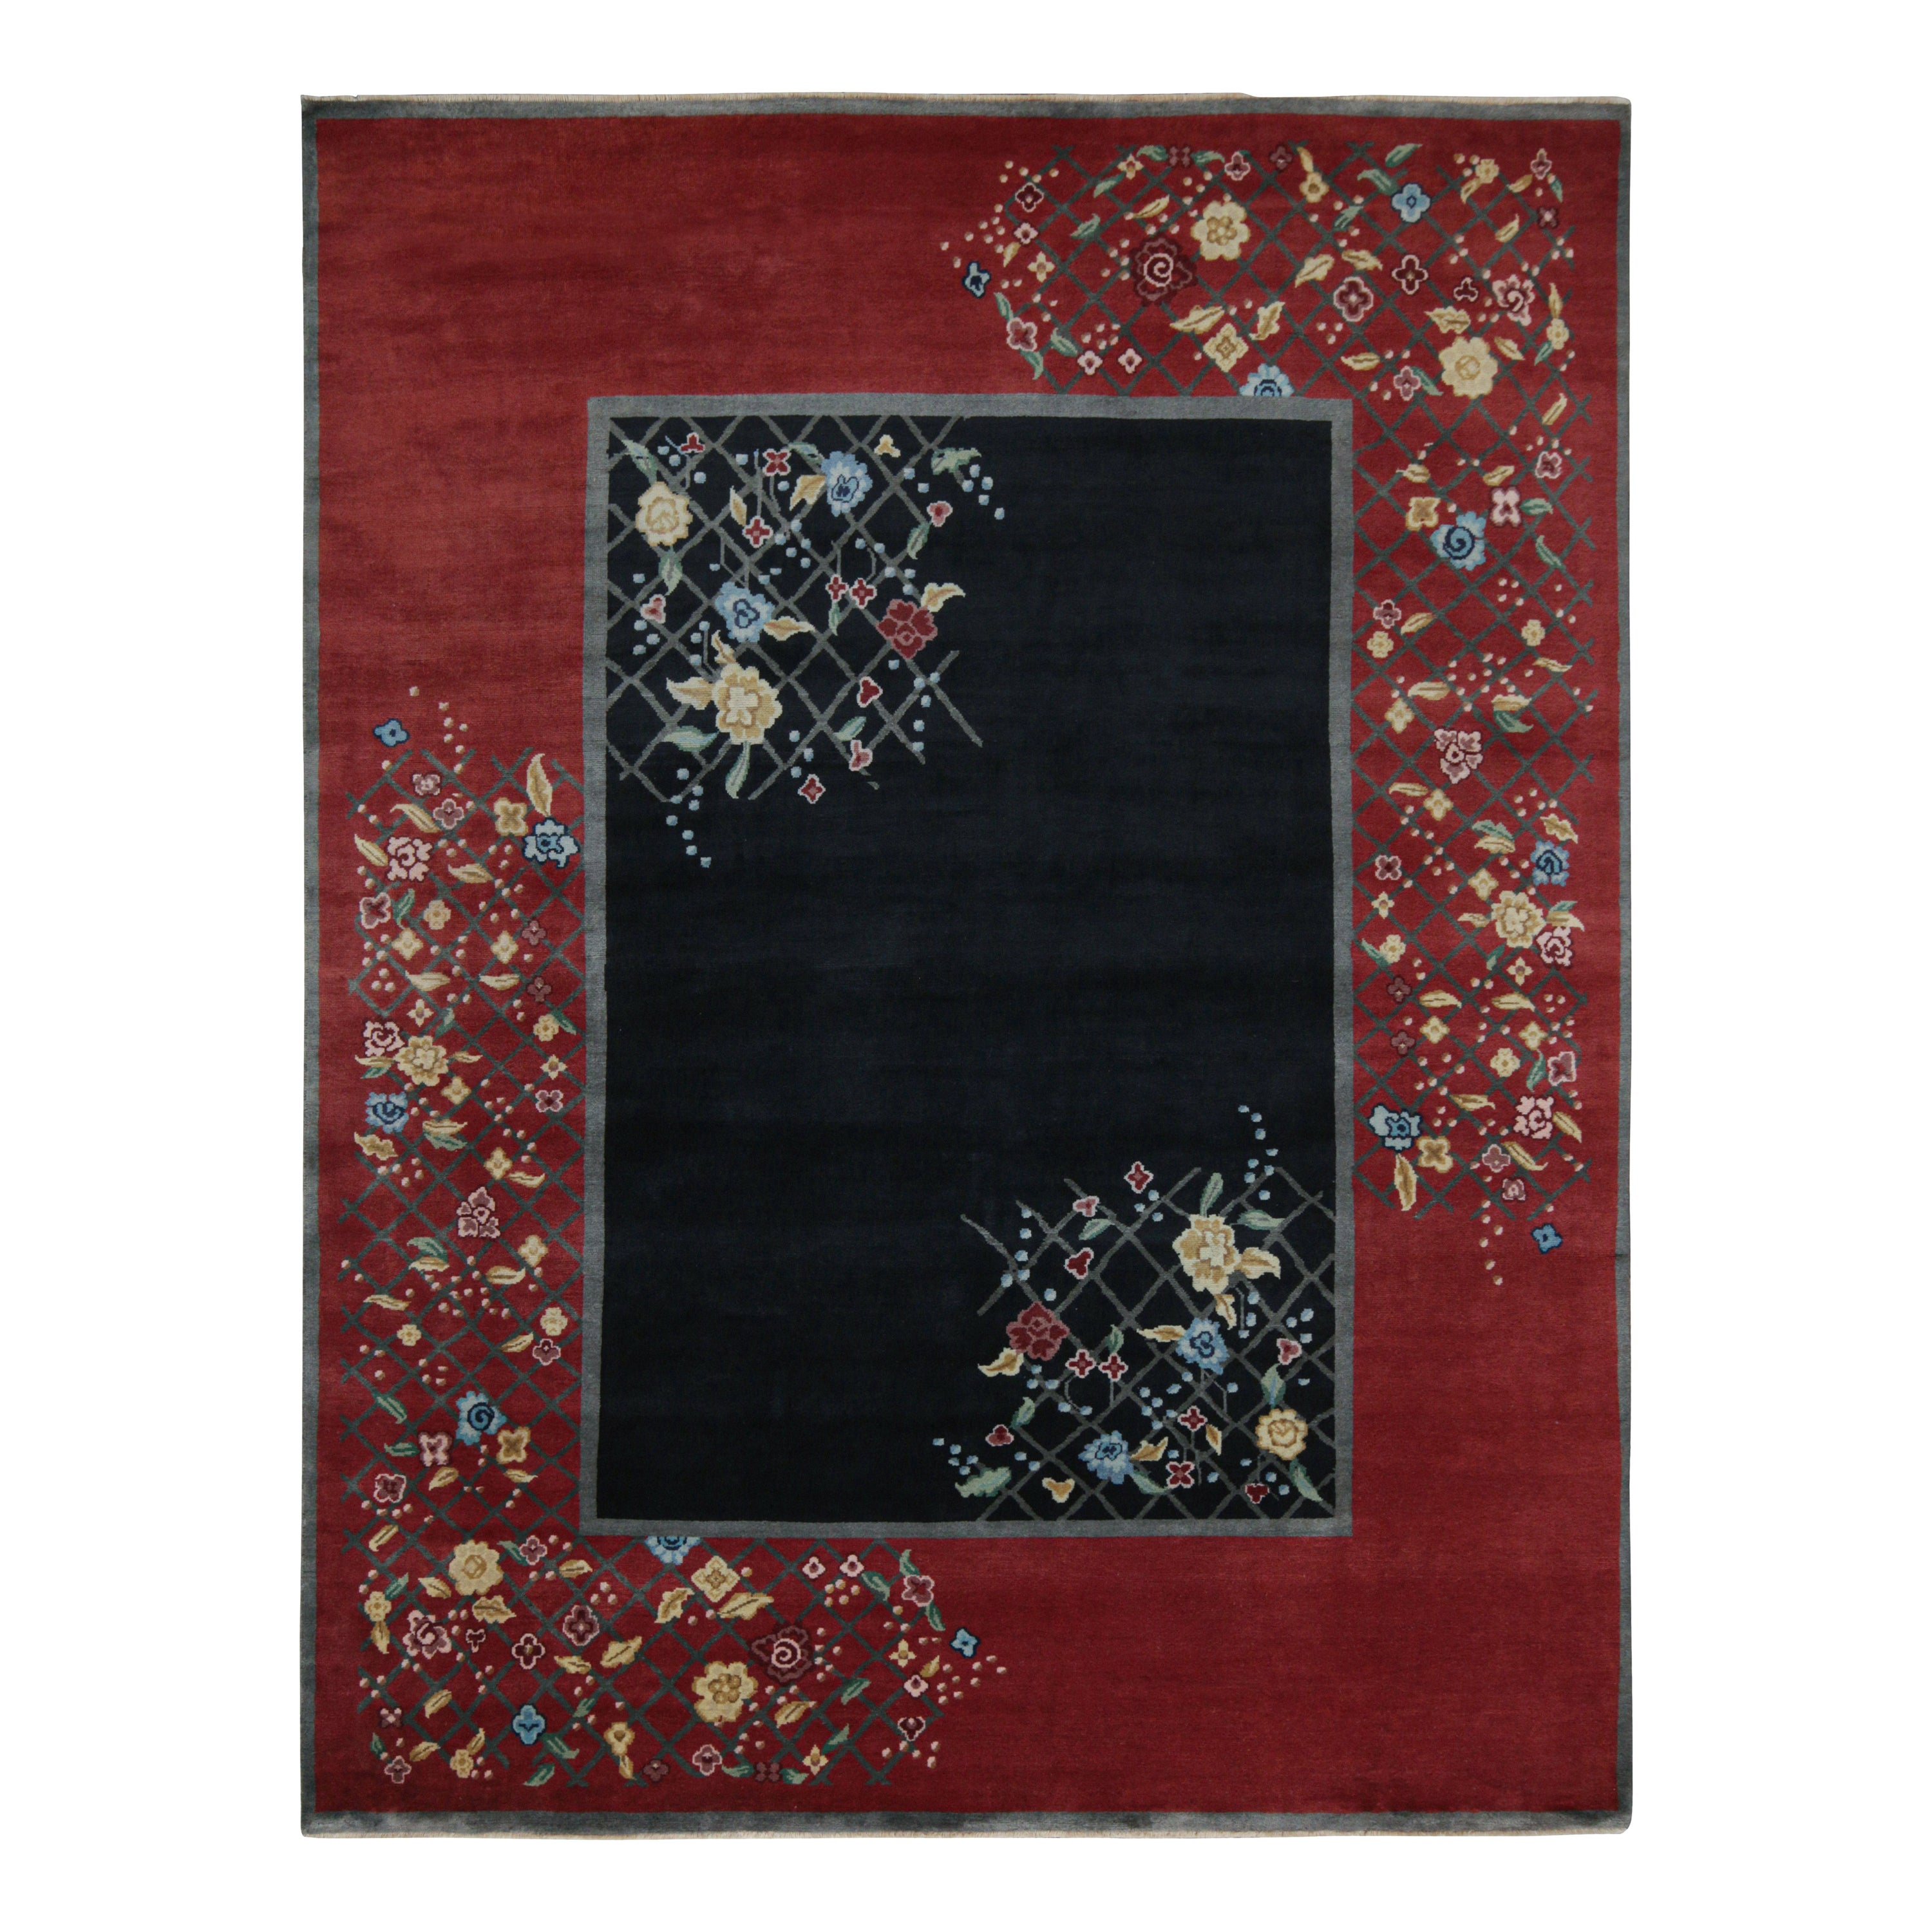 Rug & Kilim's Chinese Style Art Deco Teppich in Rot & Schwarz mit bunten Blumenmotiven